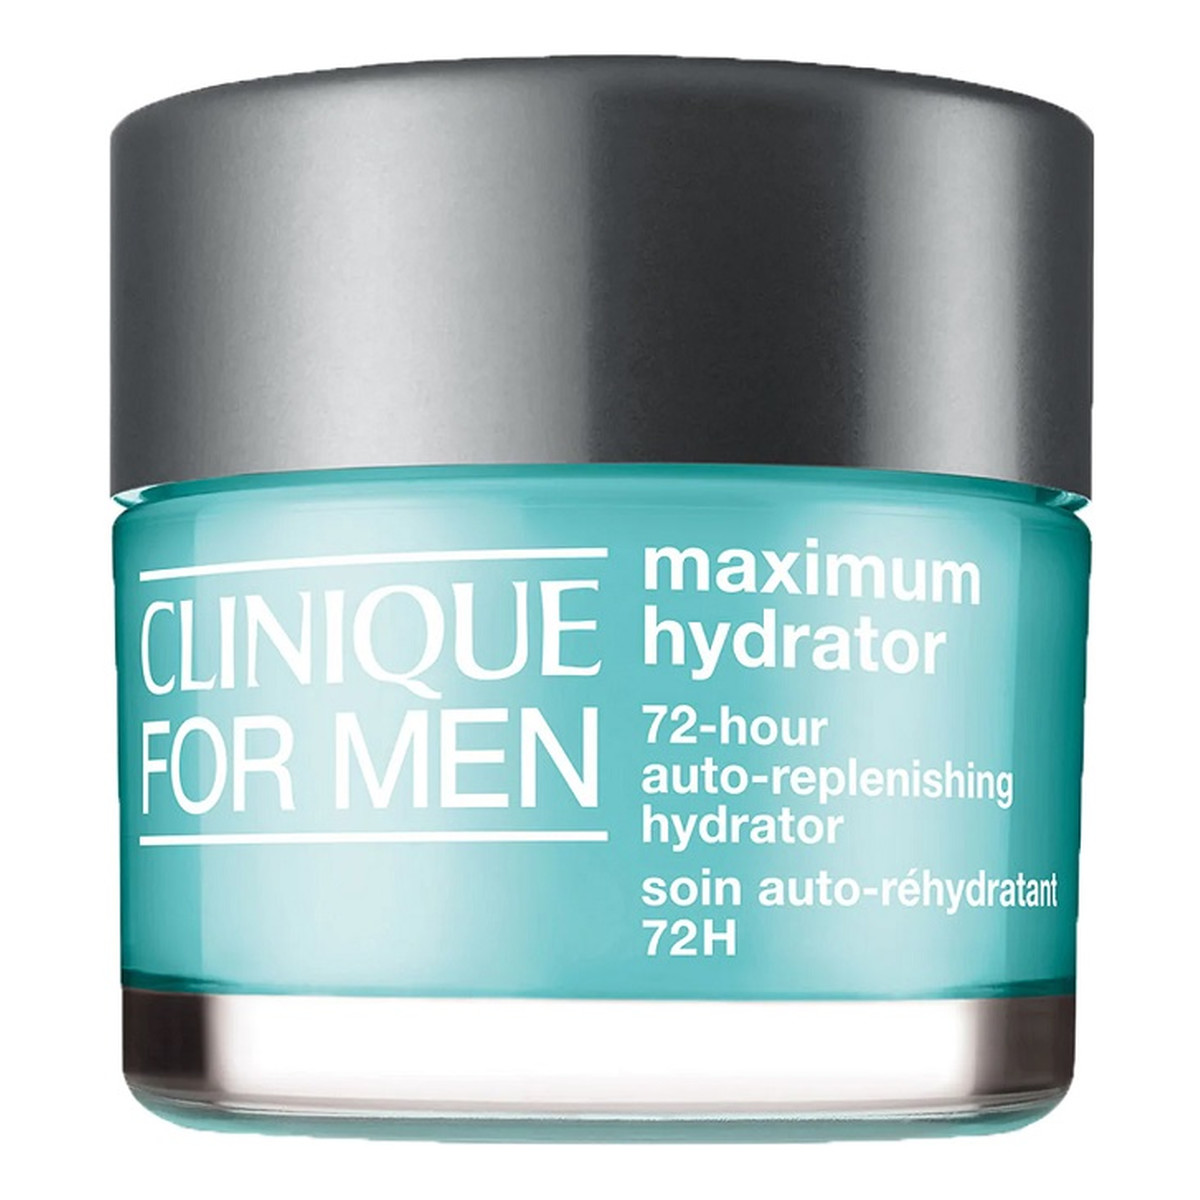 Clinique For Men Maximum Hydrator 72-Hour Auto-Replenishing Hydrator nawilżający krem dla mężczyzn 50ml